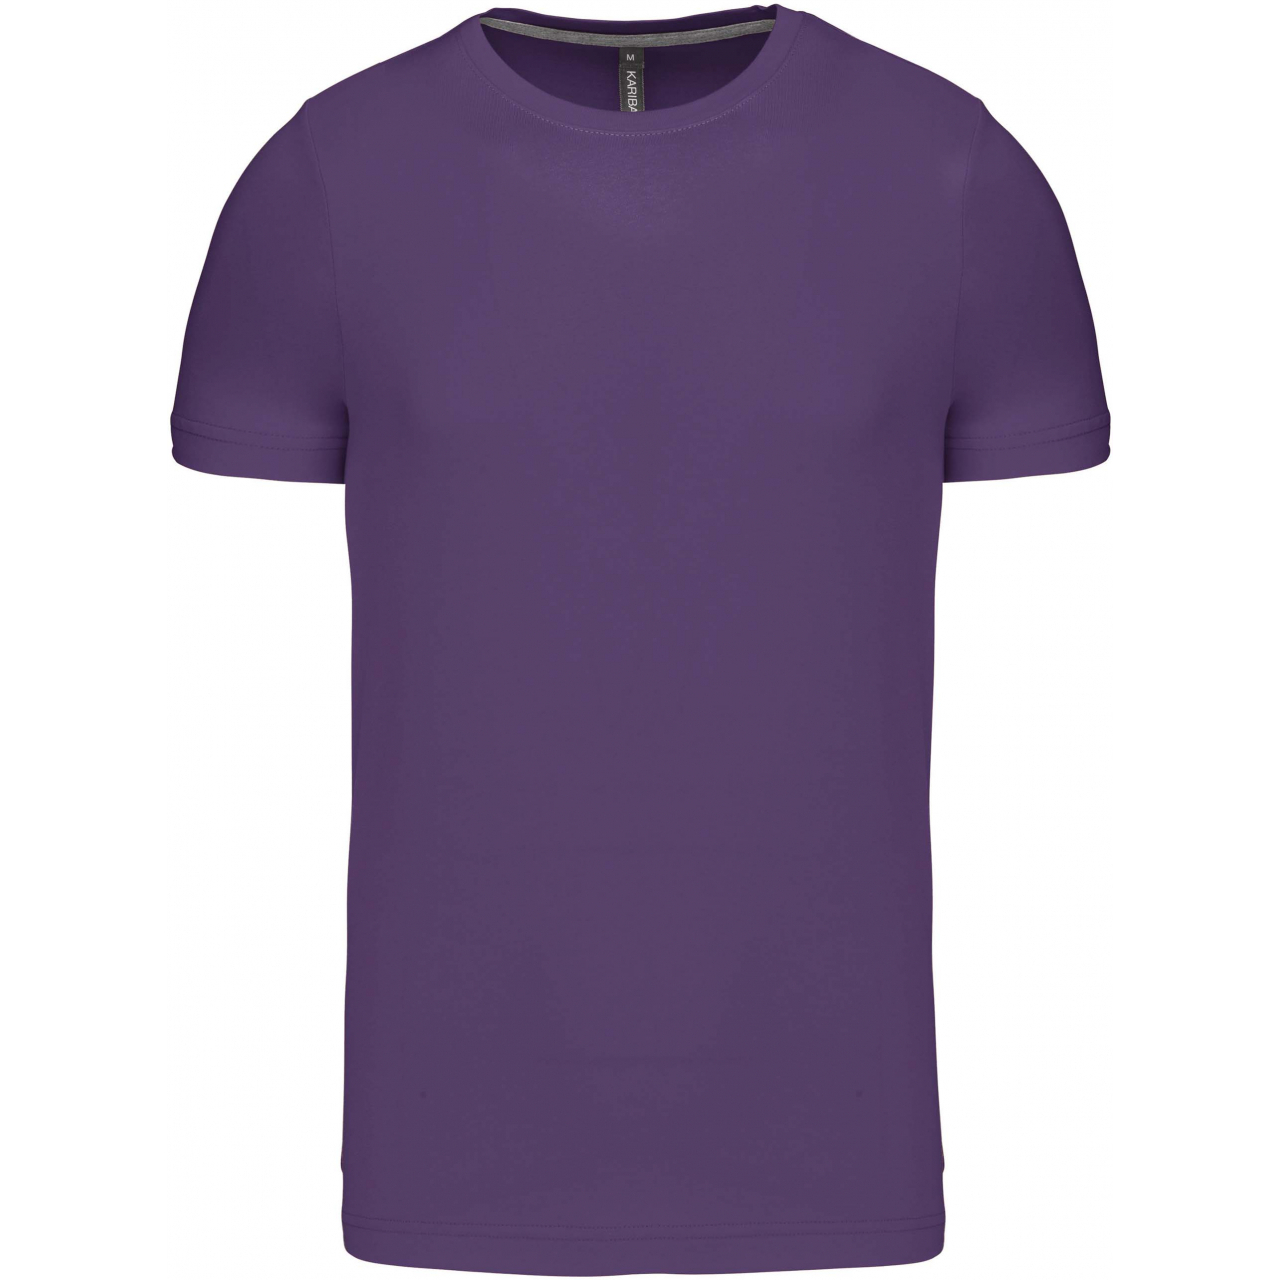 Pánské tričko Kariban krátký rukáv - fialové, XL